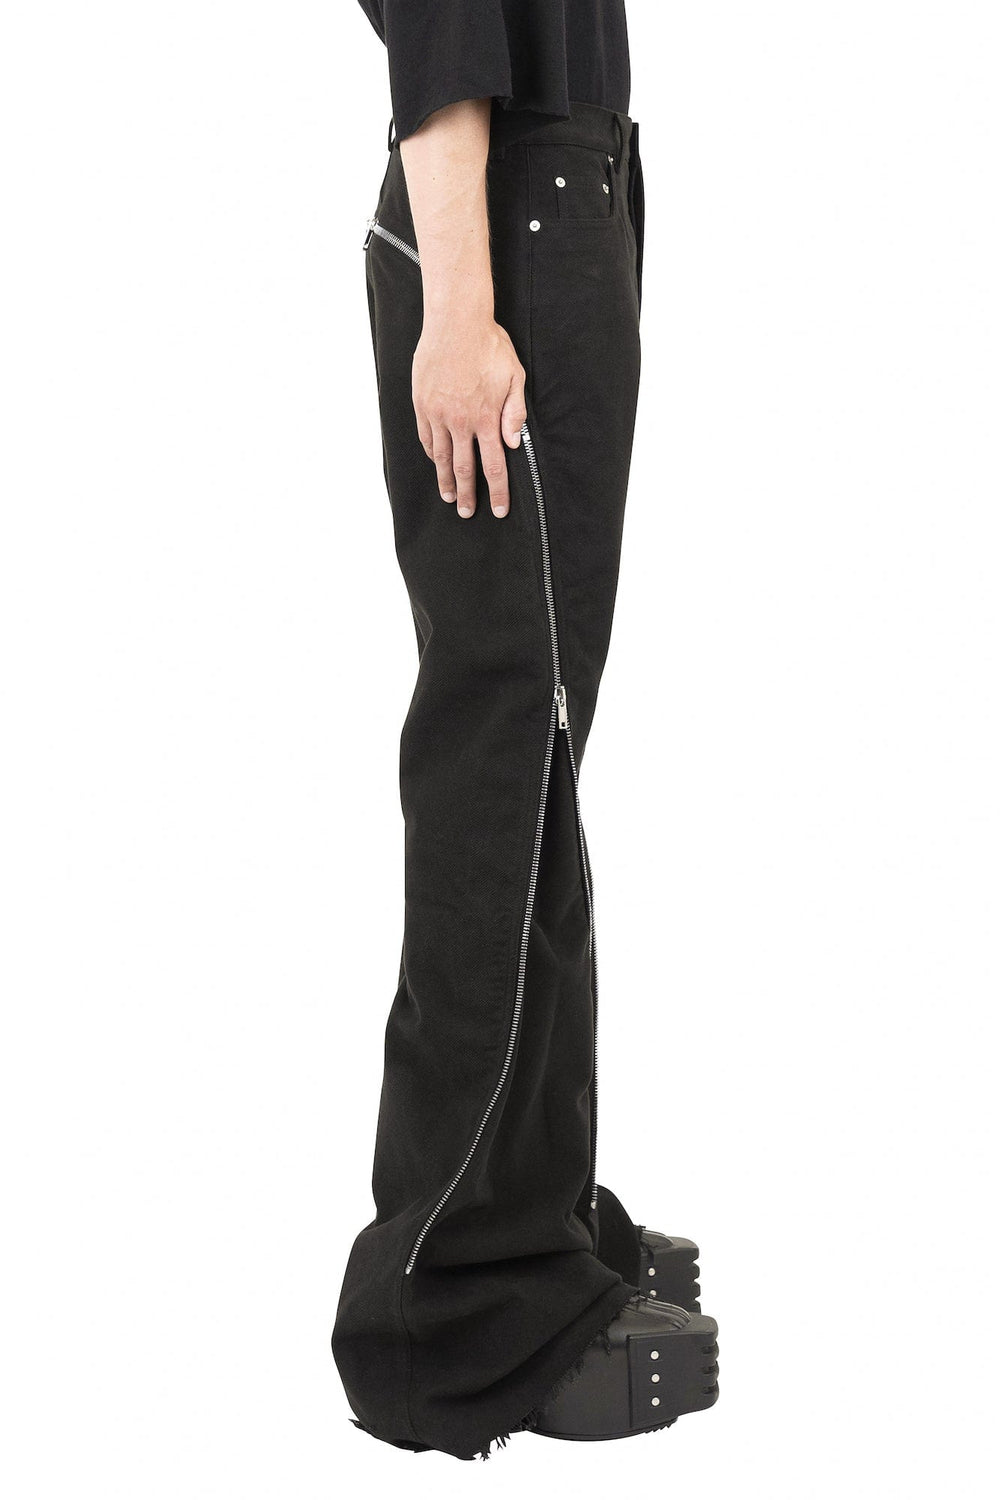 Rick Owens Bolan Banana Pants in Black Twill – Antidote Fashion